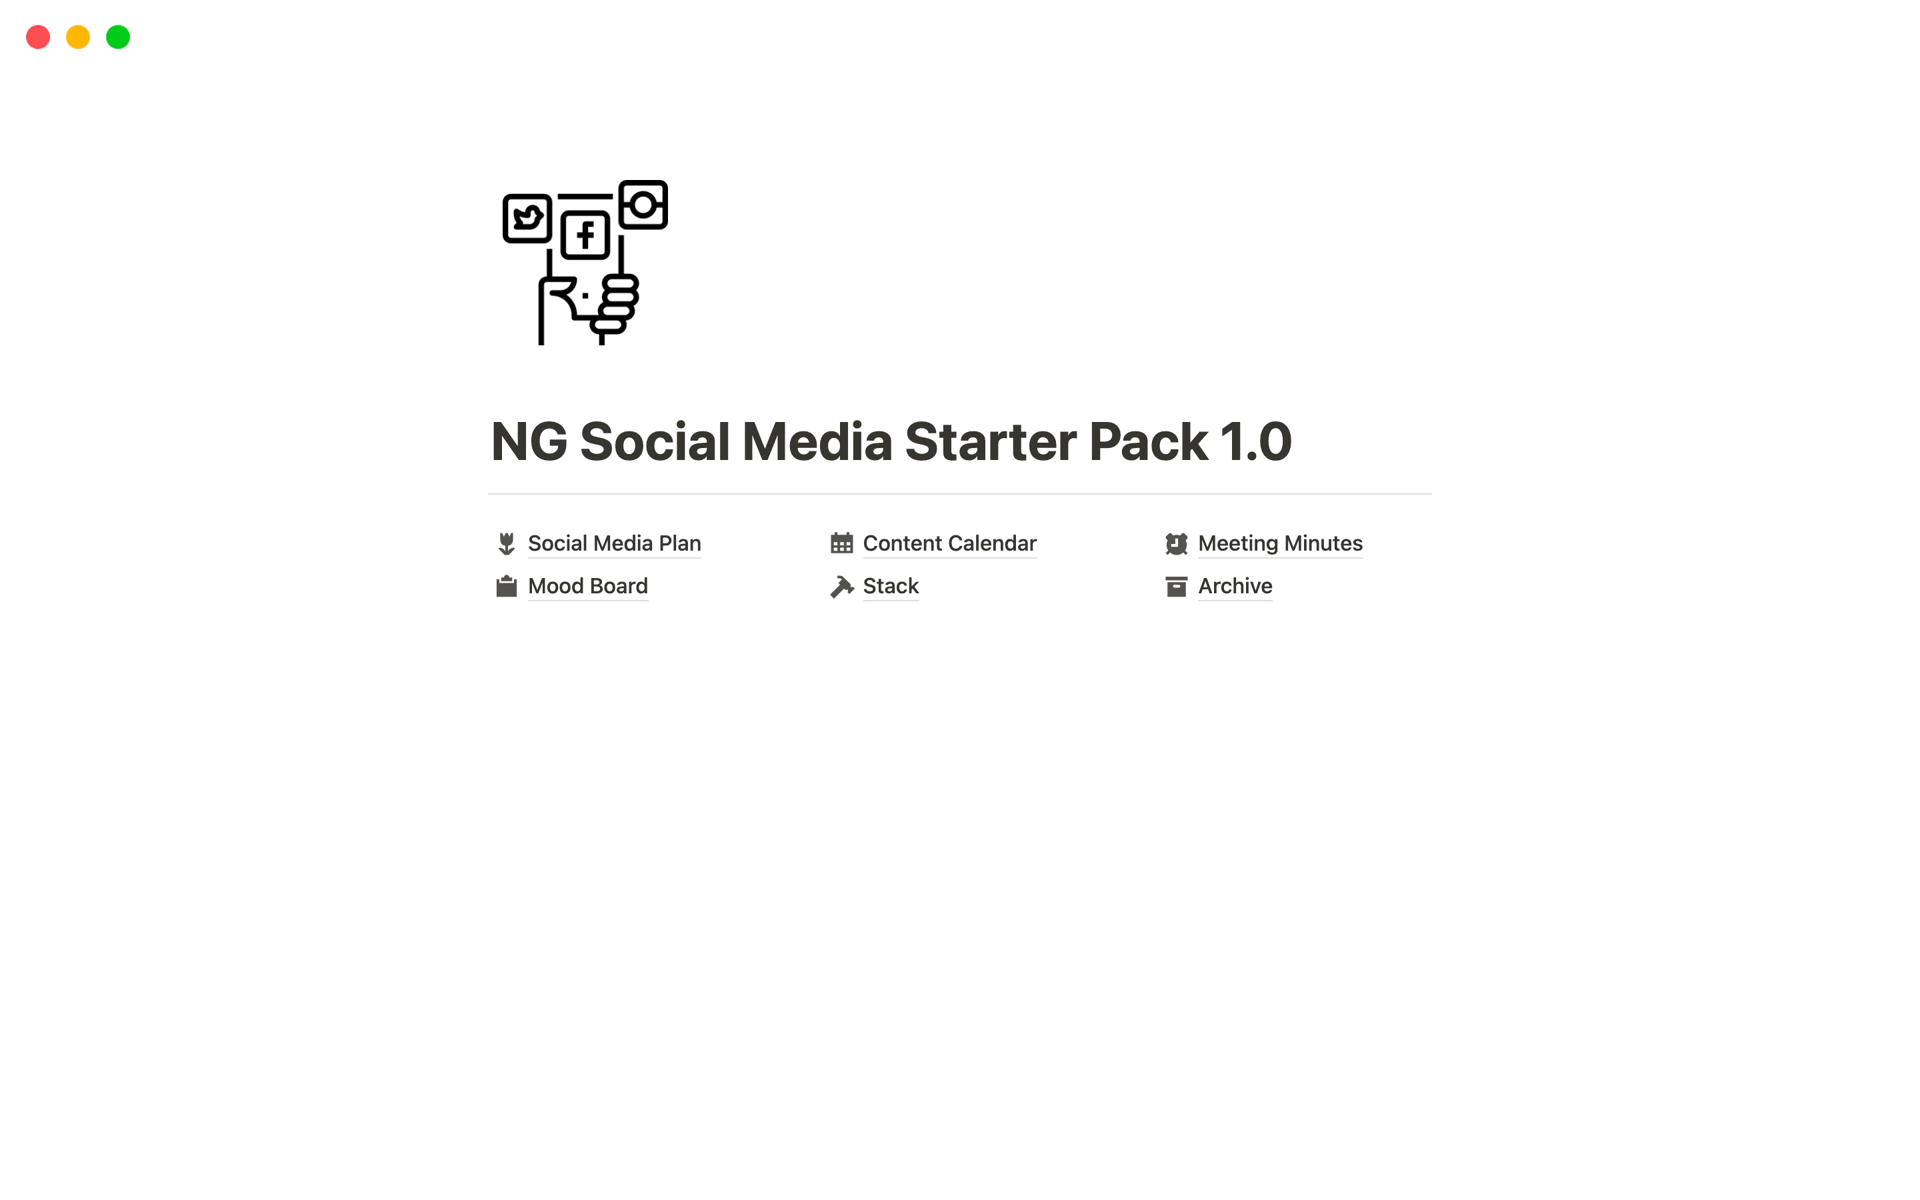 NG Social Media Starter Pack 1.0님의 템플릿 미리보기